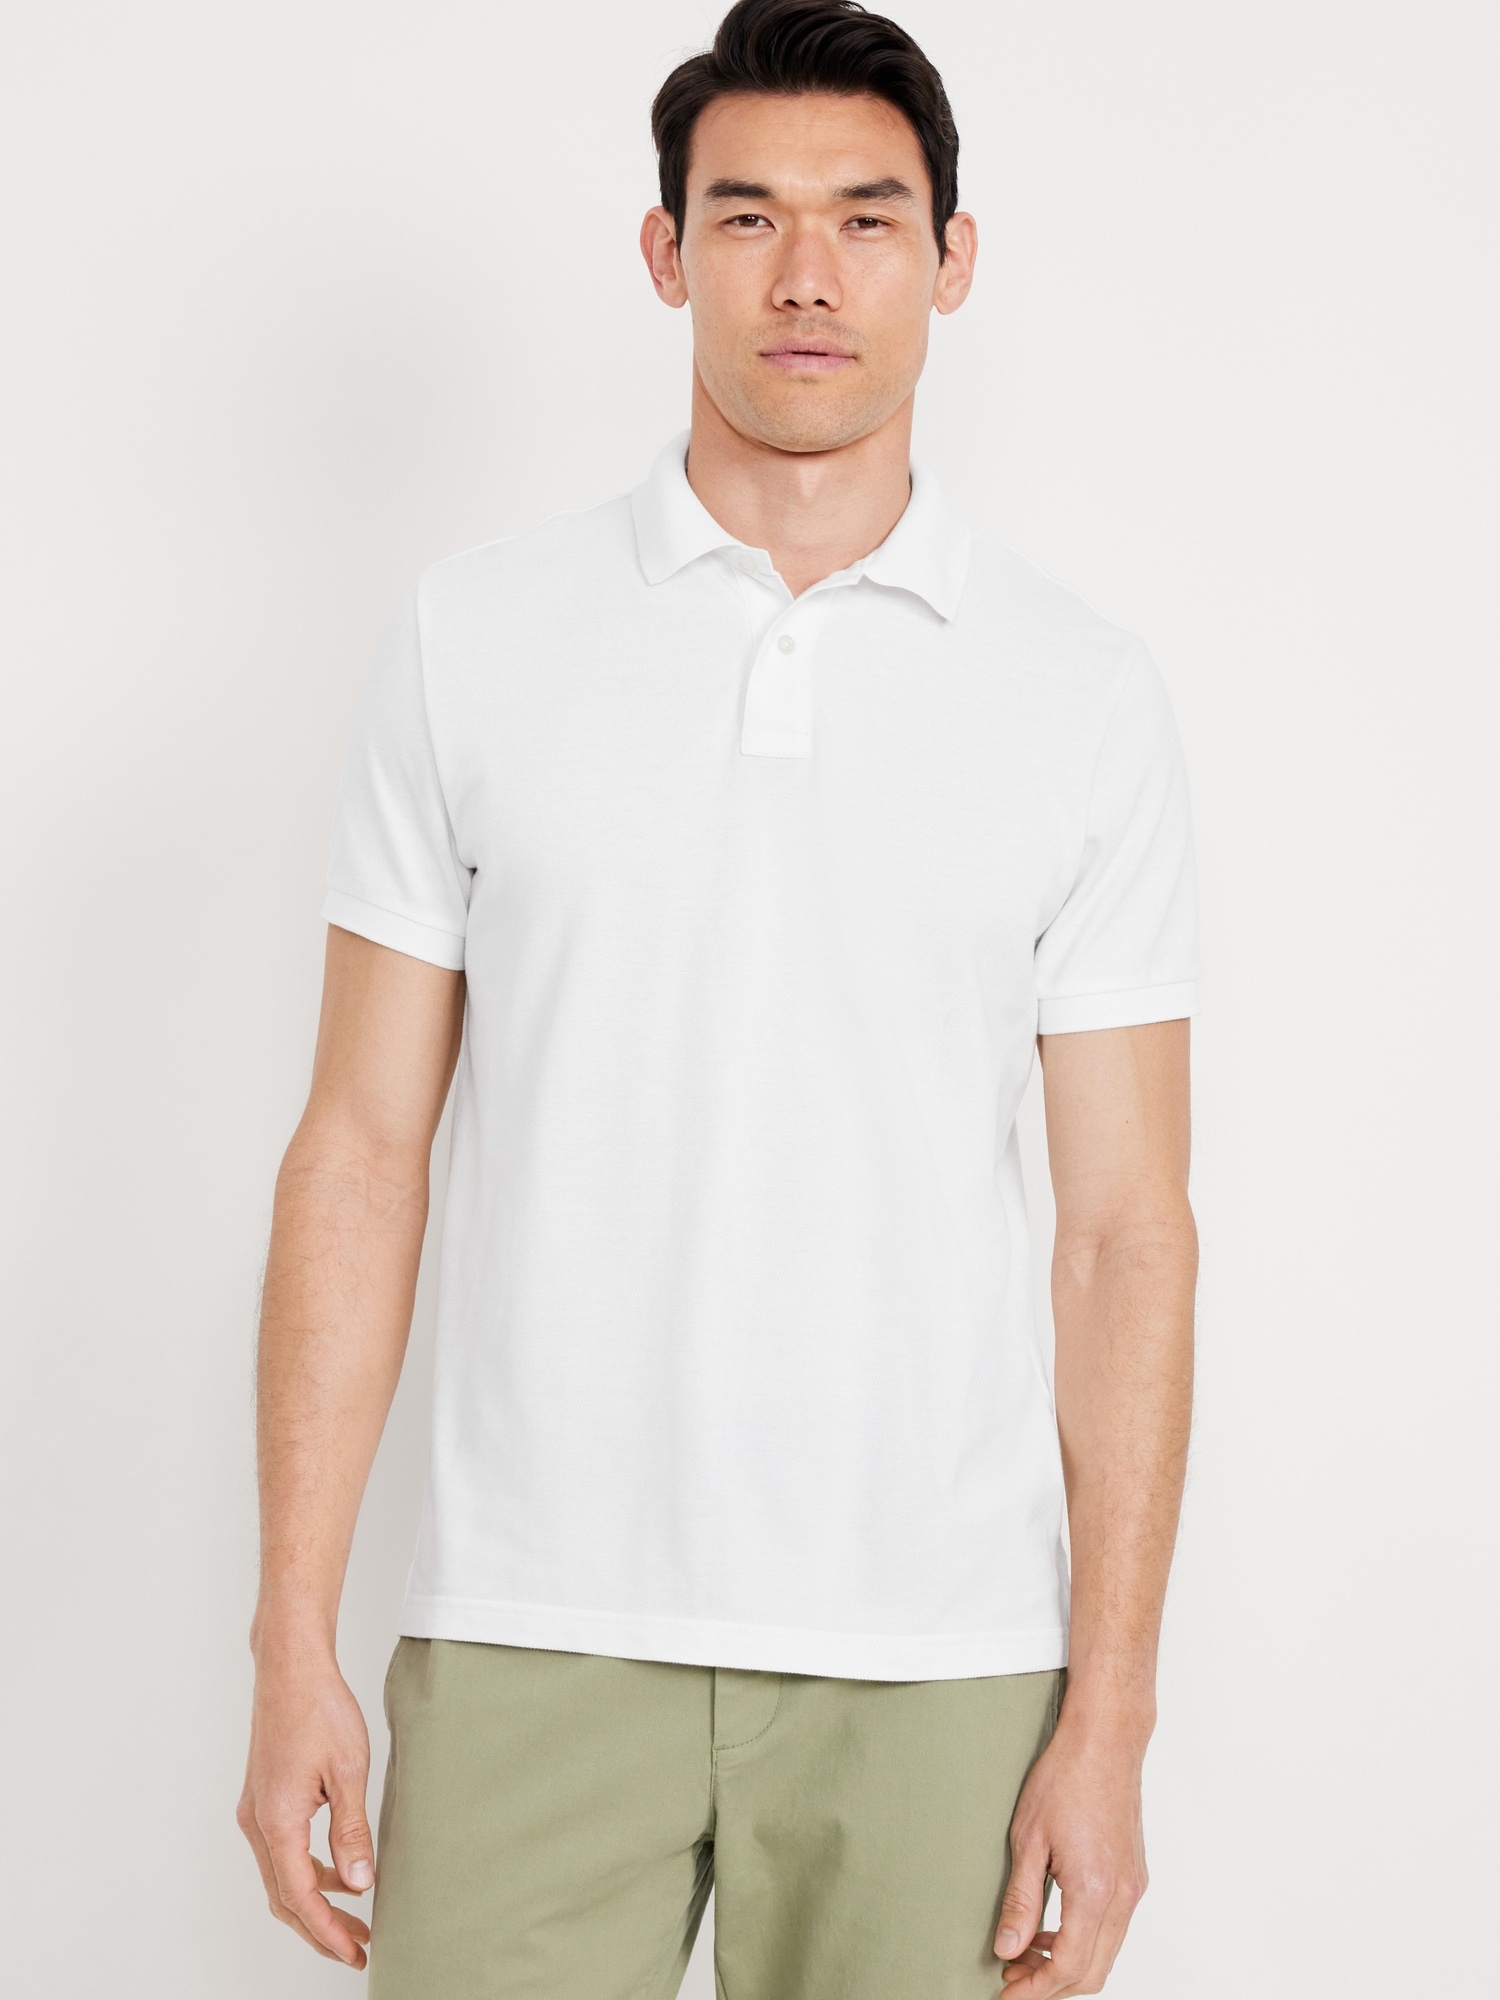 VIMEN】Plus Size Men Plain Polo Shirt (XL-5XL). Plus Size Clothes Online  Shop Singapore - Large Size Clothing Shop